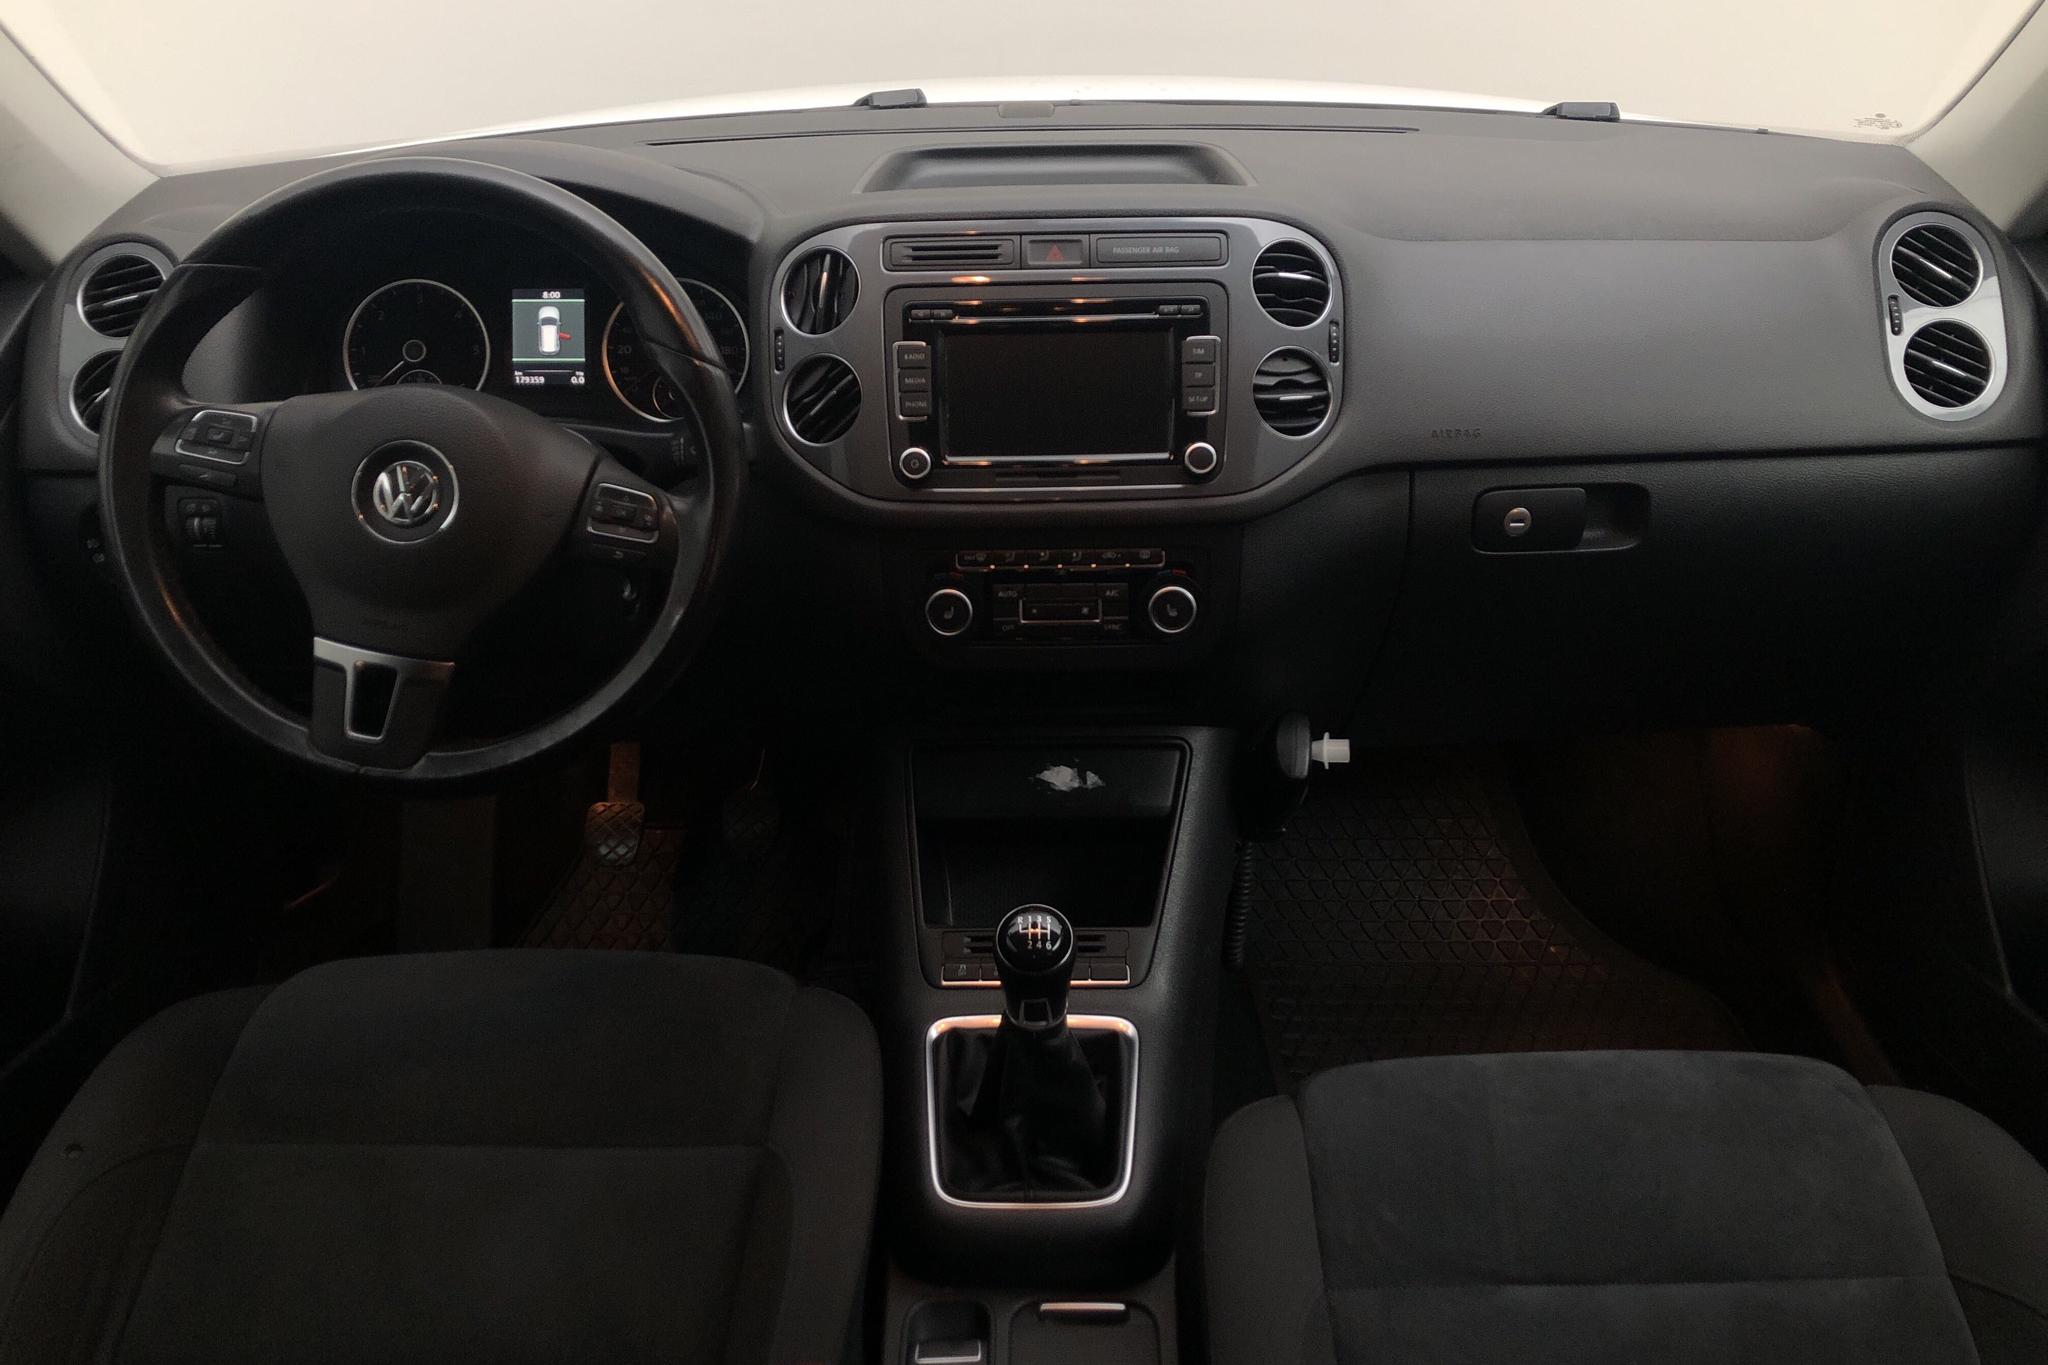 VW Tiguan 2.0 TDI 4MOTION BlueMotion Technology (140hk) - 179 360 km - Manual - white - 2013